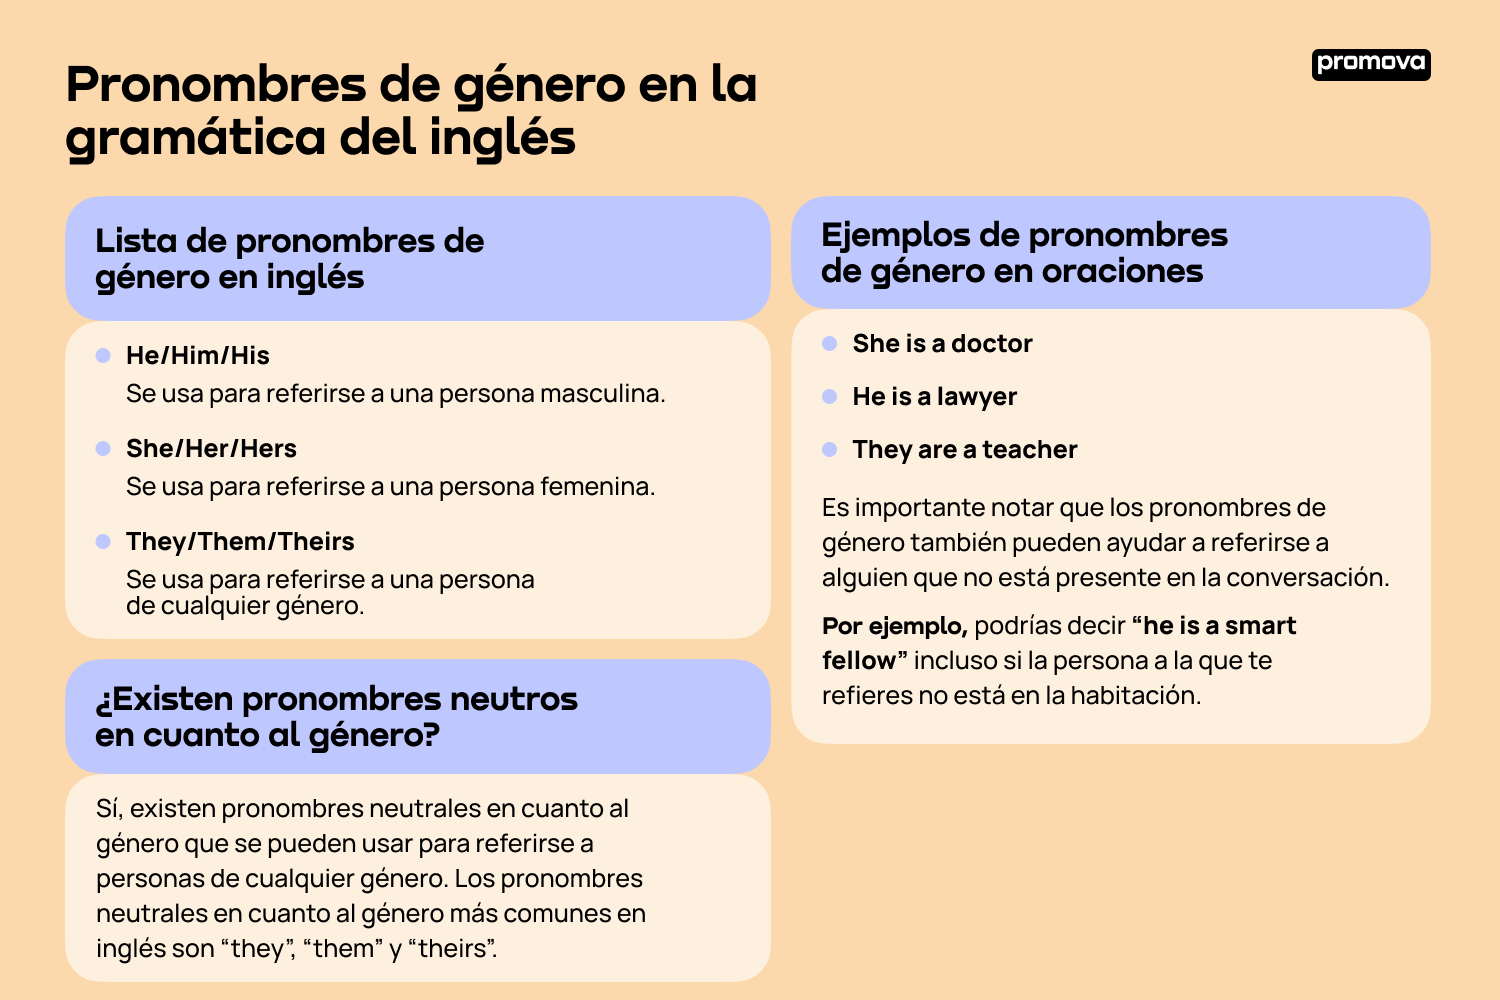 Explorando los pronombres de género en la gramática del inglés